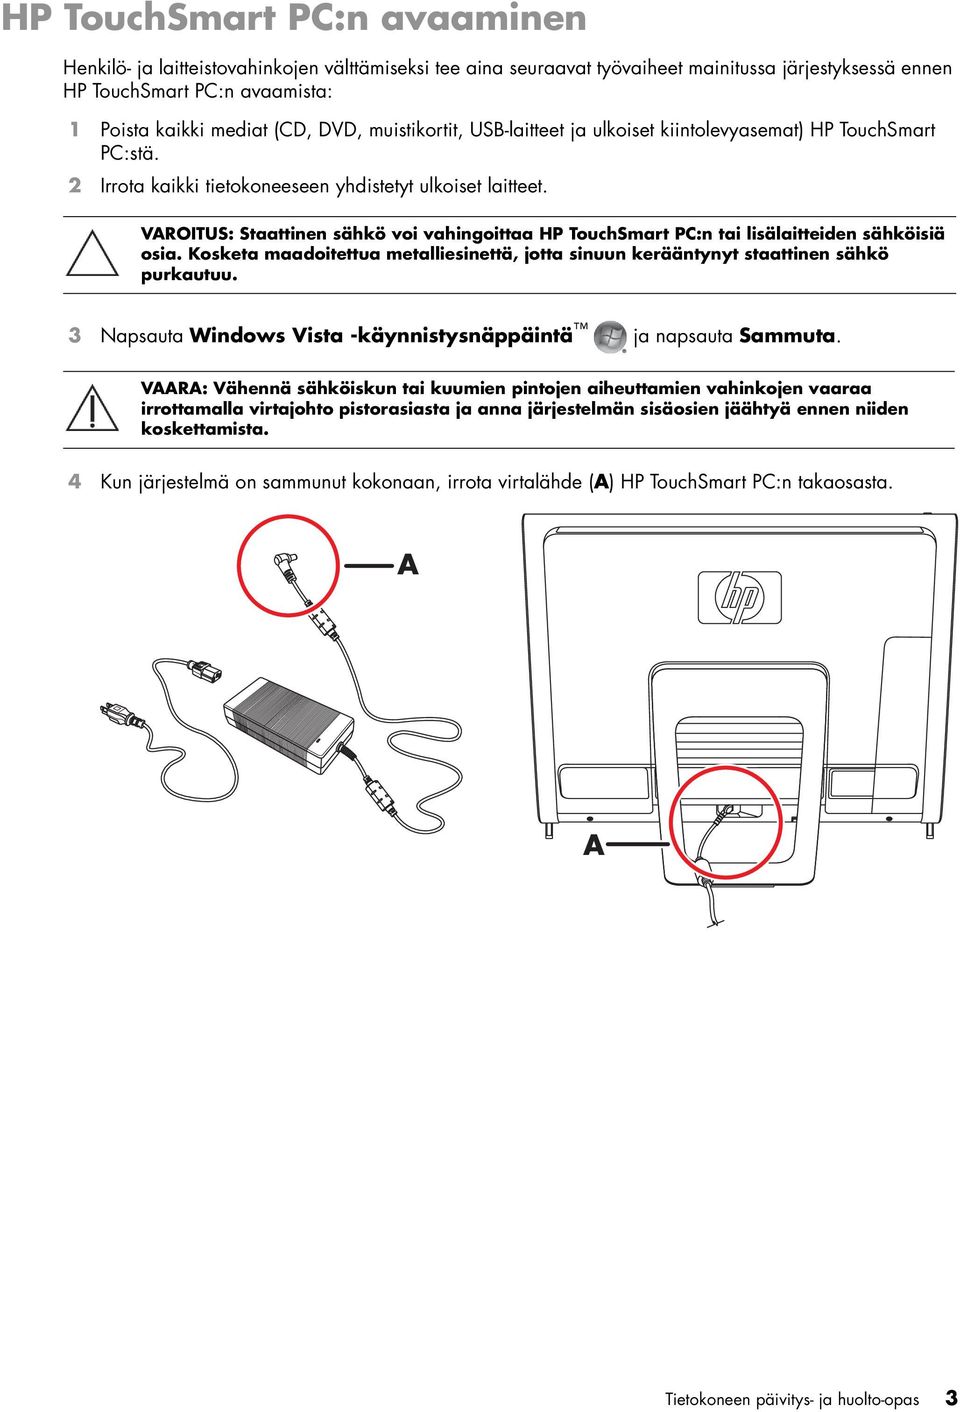 VAROITUS: Staattinen sähkö voi vahingoittaa HP TouchSmart PC:n tai lisälaitteiden sähköisiä osia. Kosketa maadoitettua metalliesinettä, jotta sinuun kerääntynyt staattinen sähkö purkautuu.